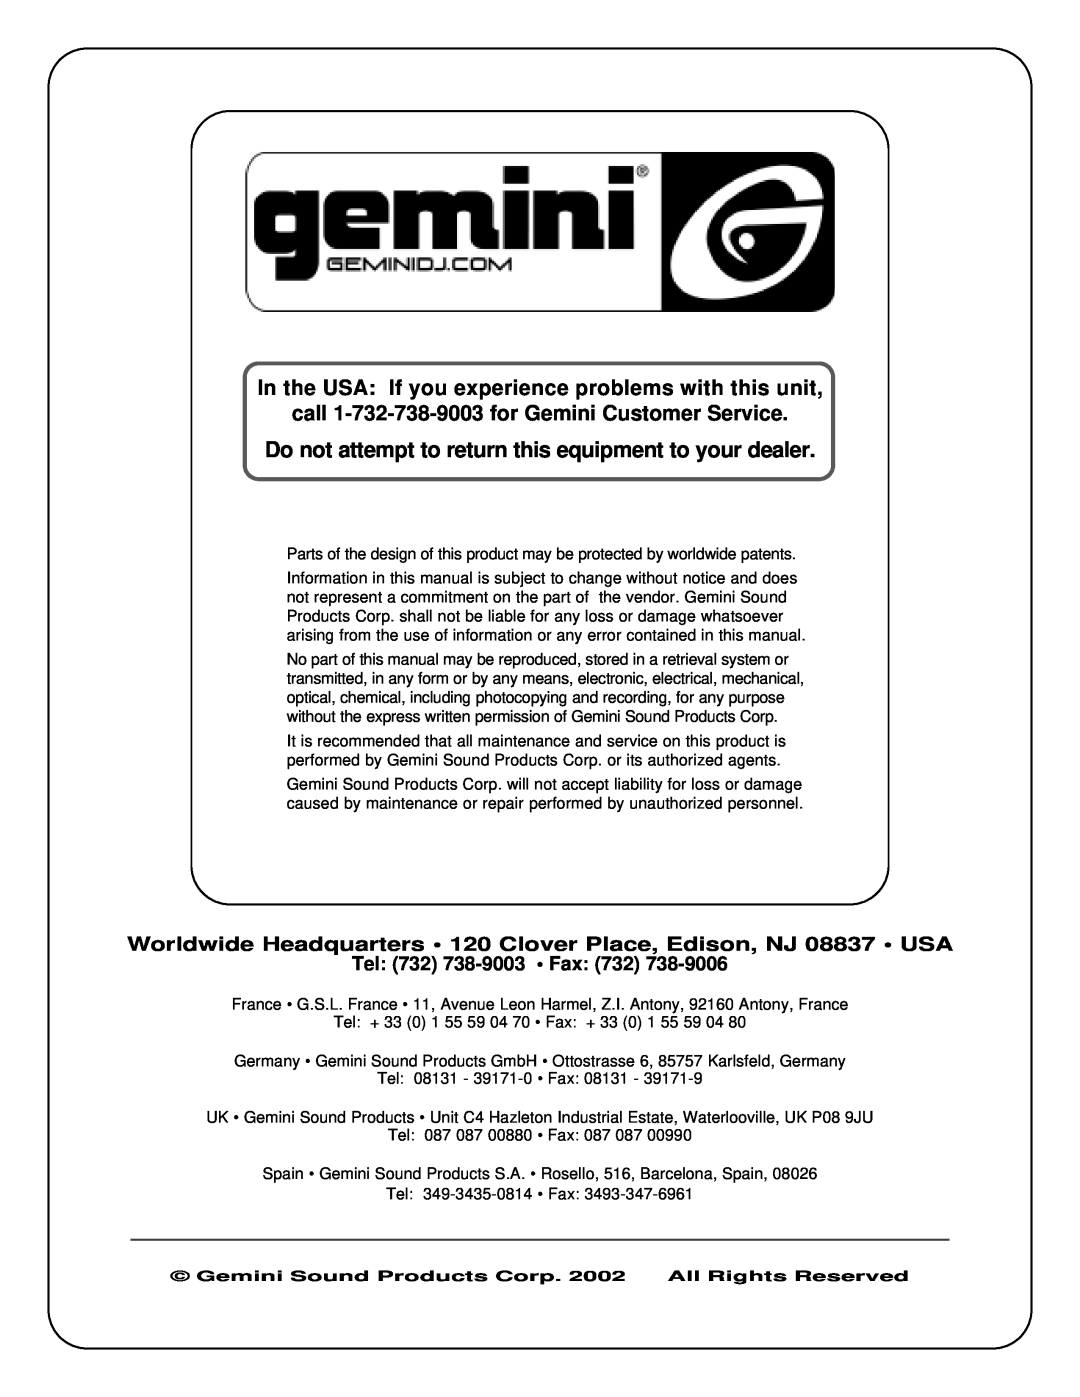 Gemini PA-702 manual call 1-732-738-9003for Gemini Customer Service, Tel 732 738-9003 Fax 